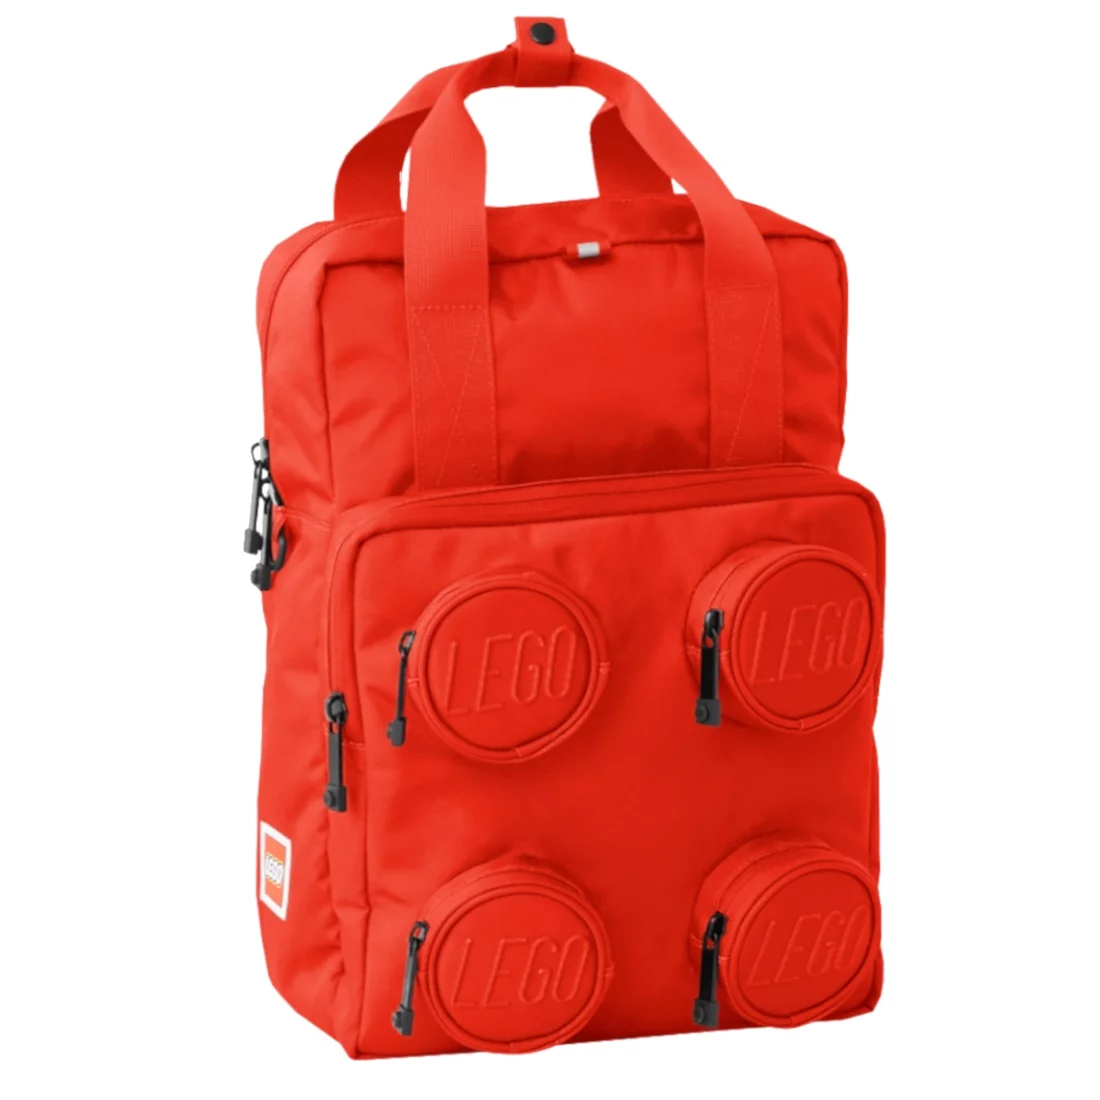 Фото - Рюкзак Lego Brick 2x2 Backpack 20205-0021, Dla chłopca, Czerwone, plecaki, polies 